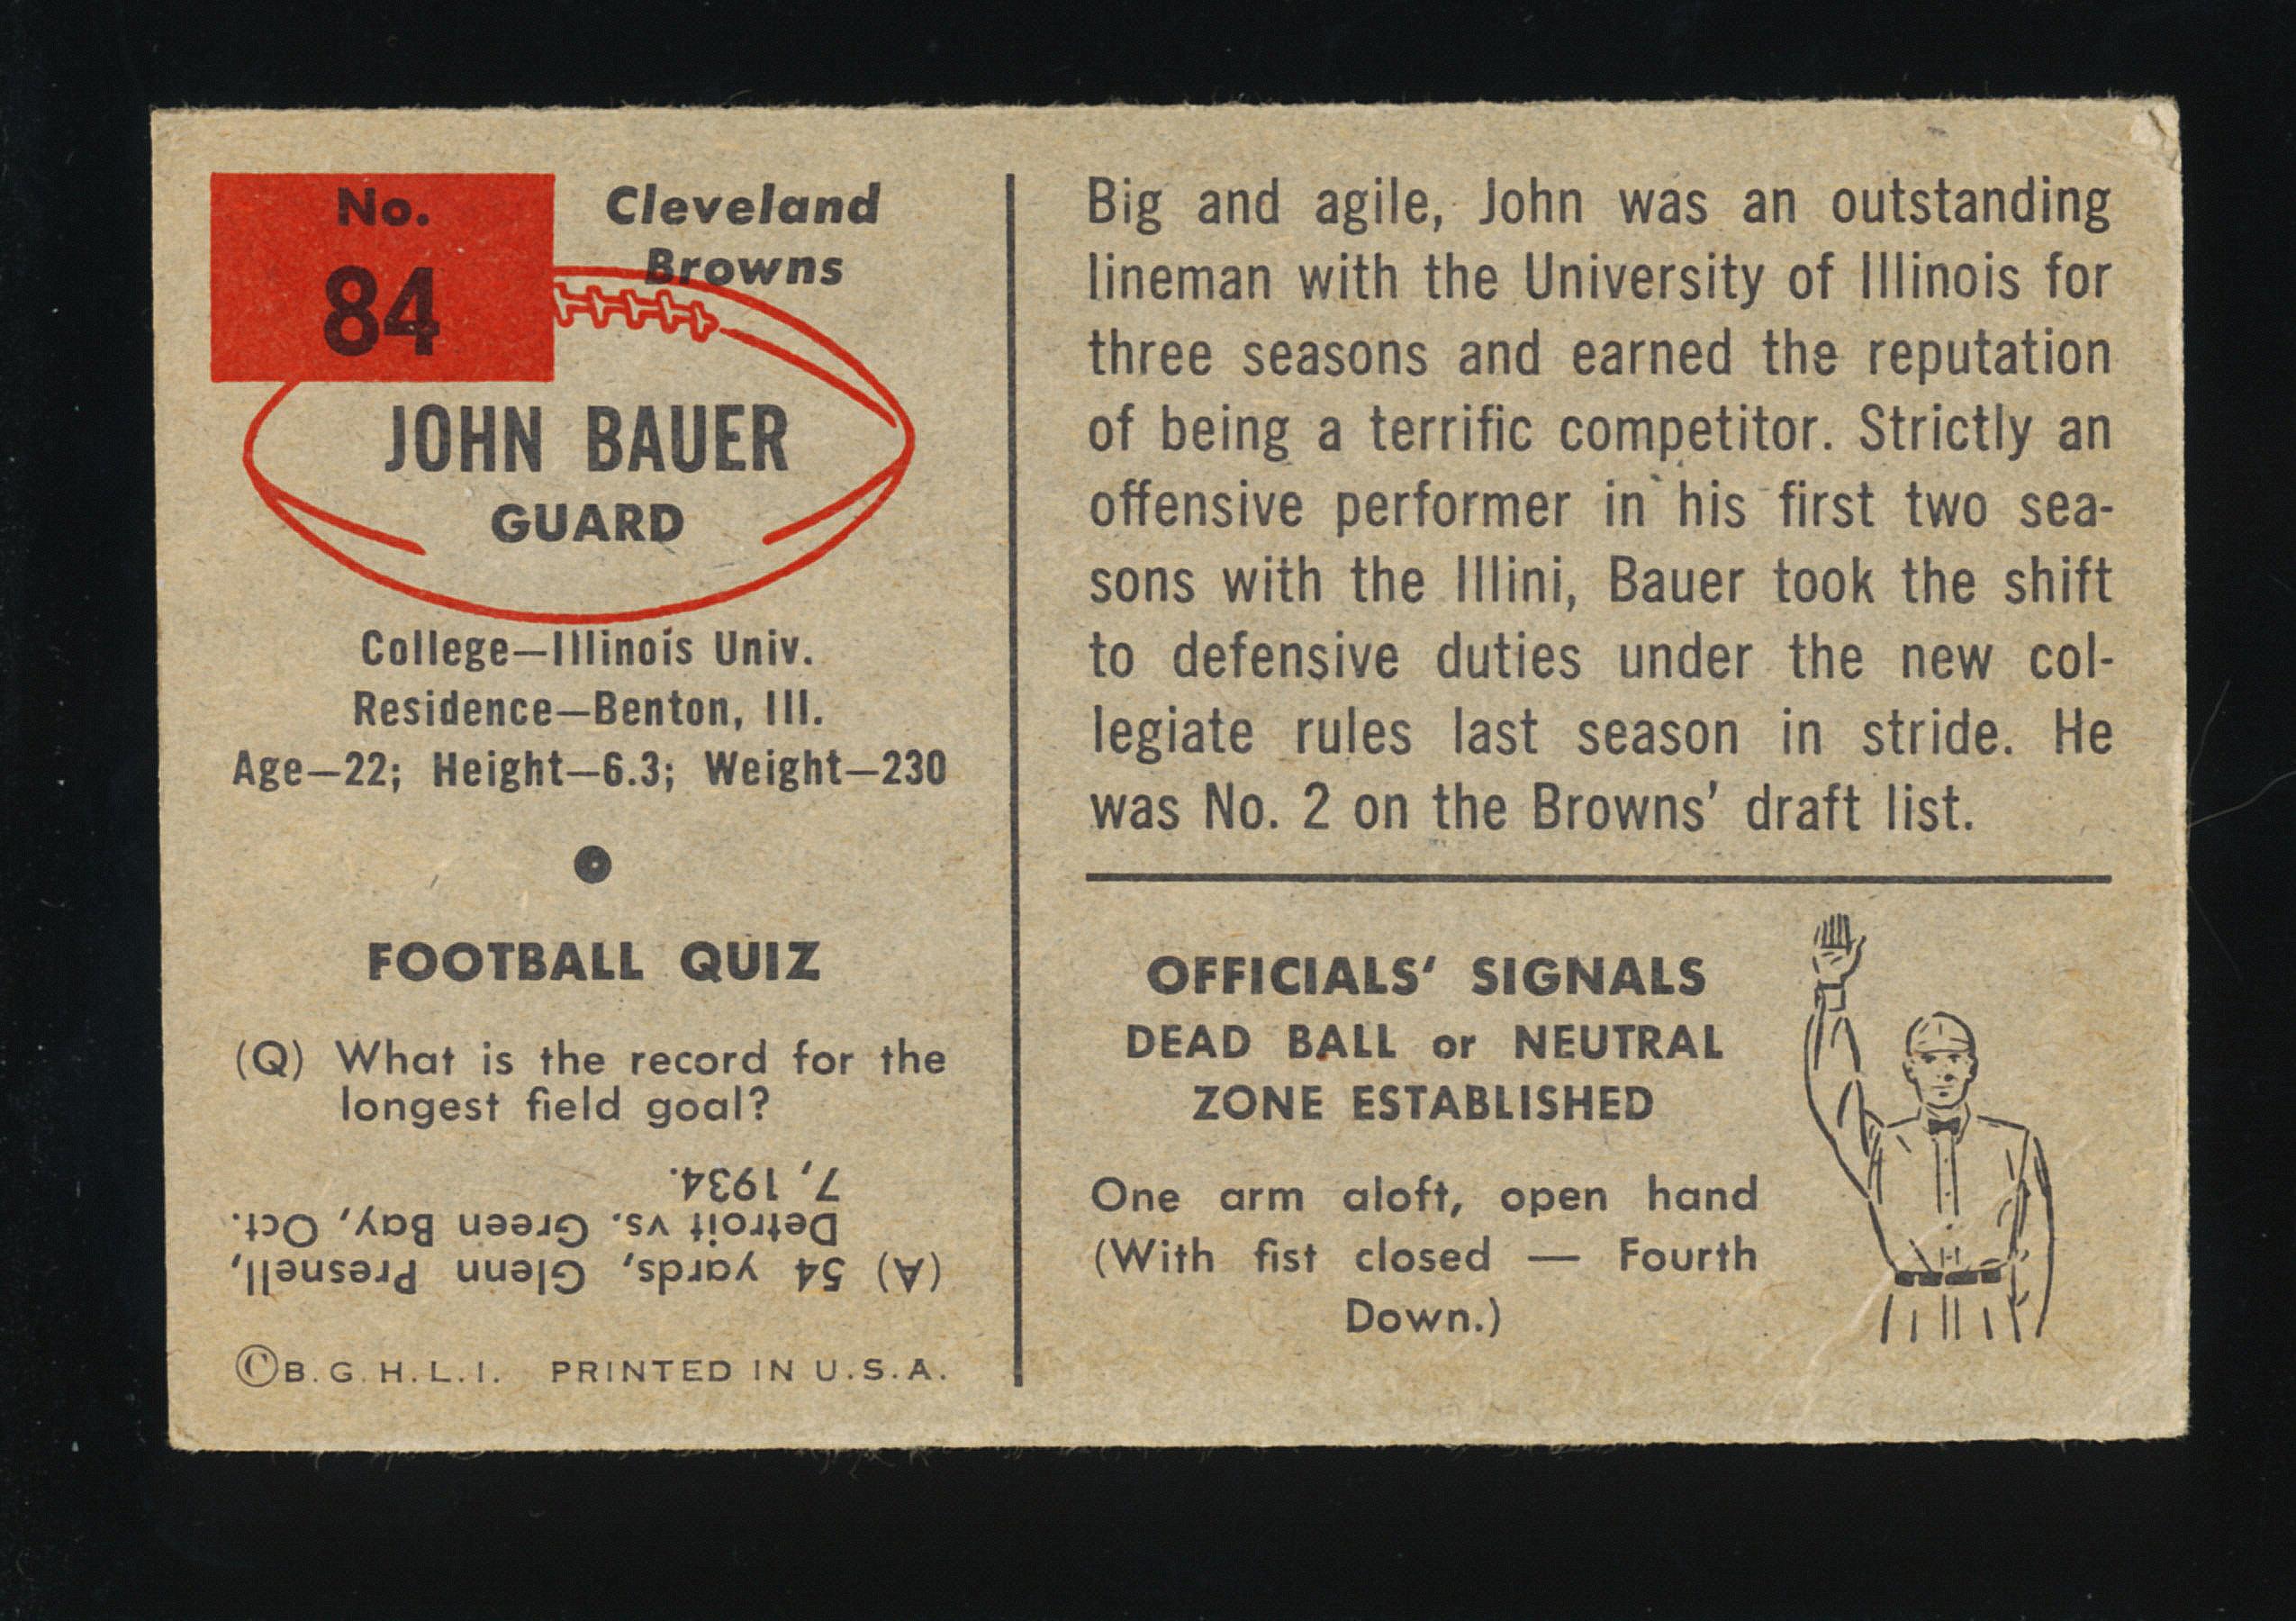 1954 Bowman Football Card #84 John Bauer Cleveland Browns